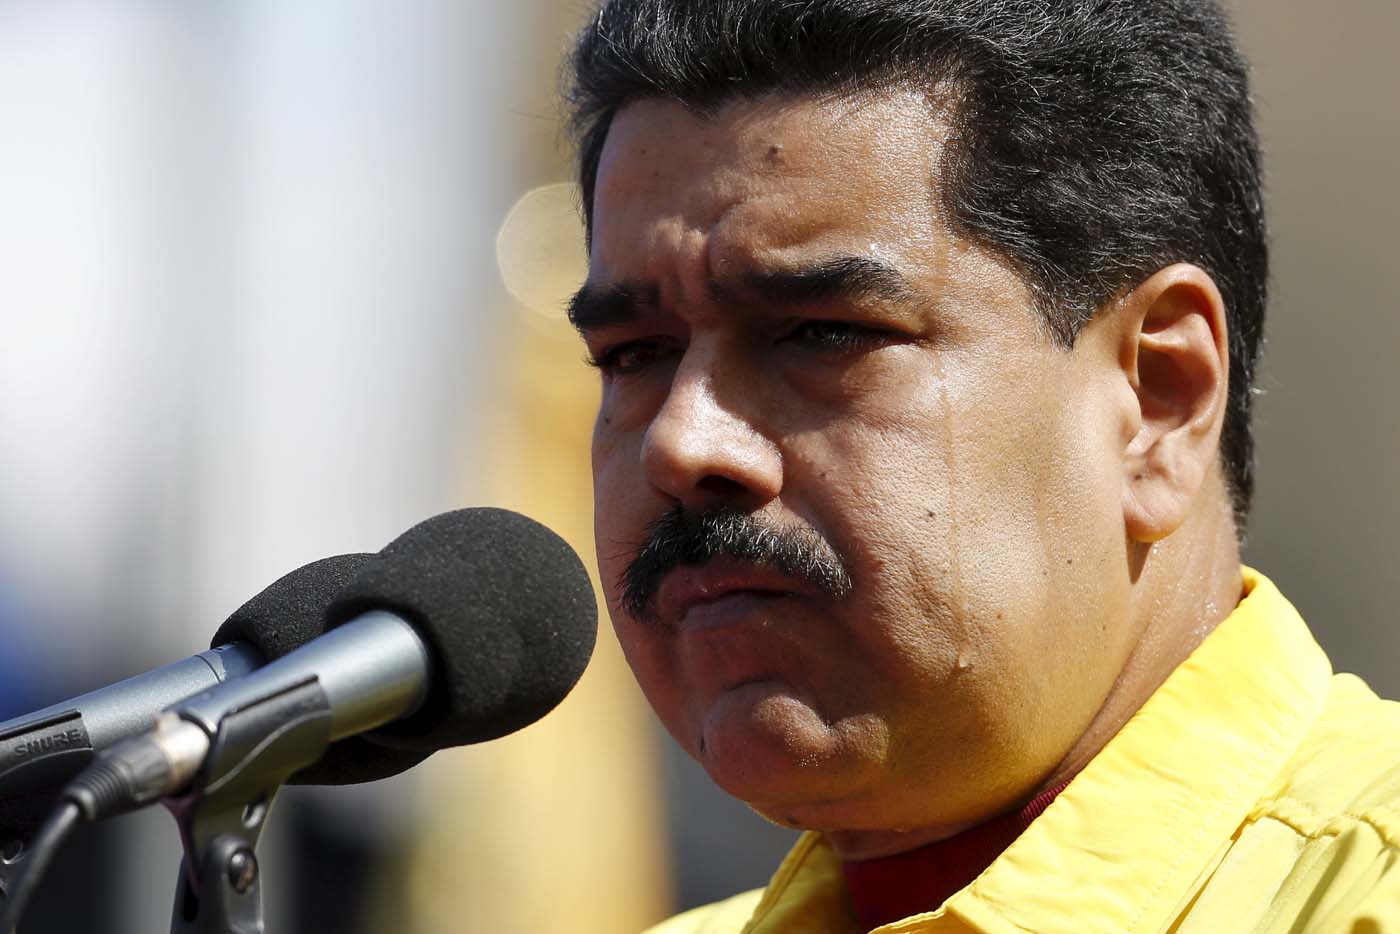 Después de “querer tener las mejores relaciones”, Maduro vuelve a meterse con Trump (Video)